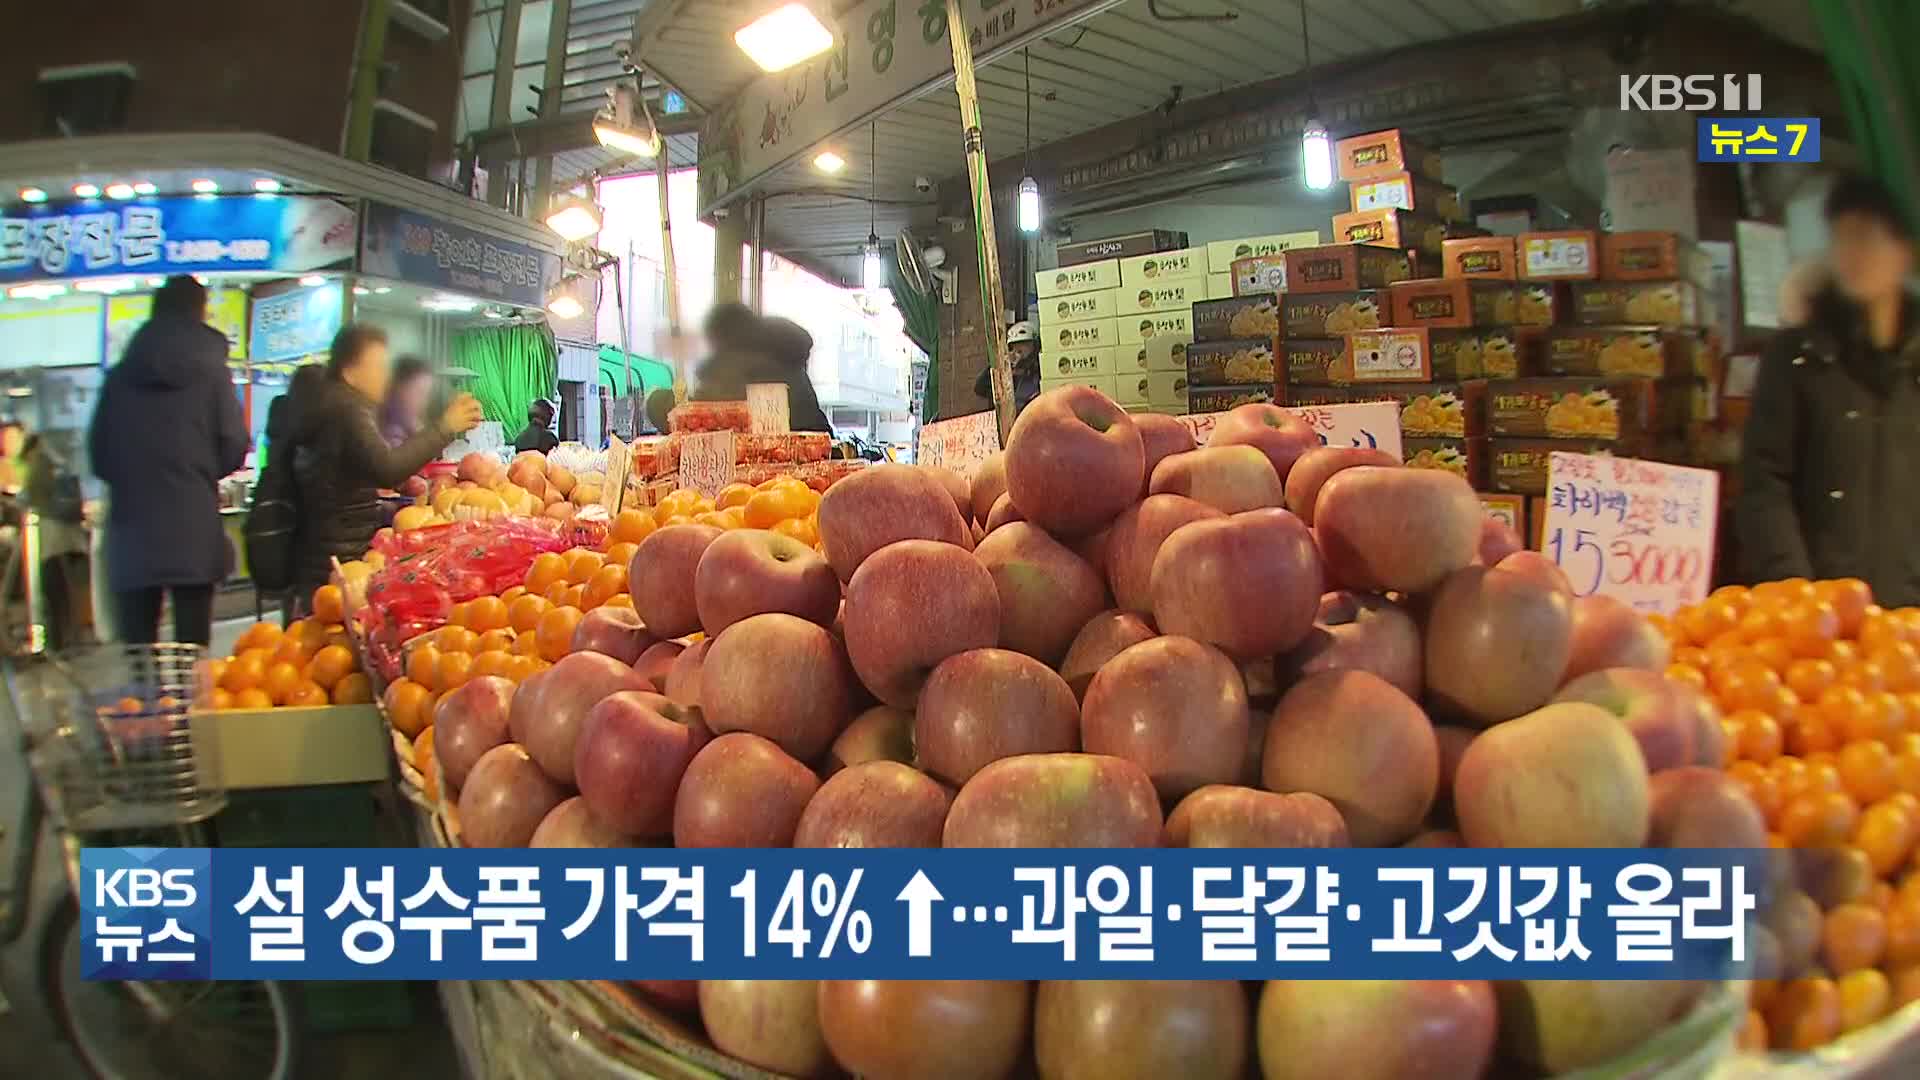 설 성수품 가격 14%↑…과일·달걀·고깃값 올라